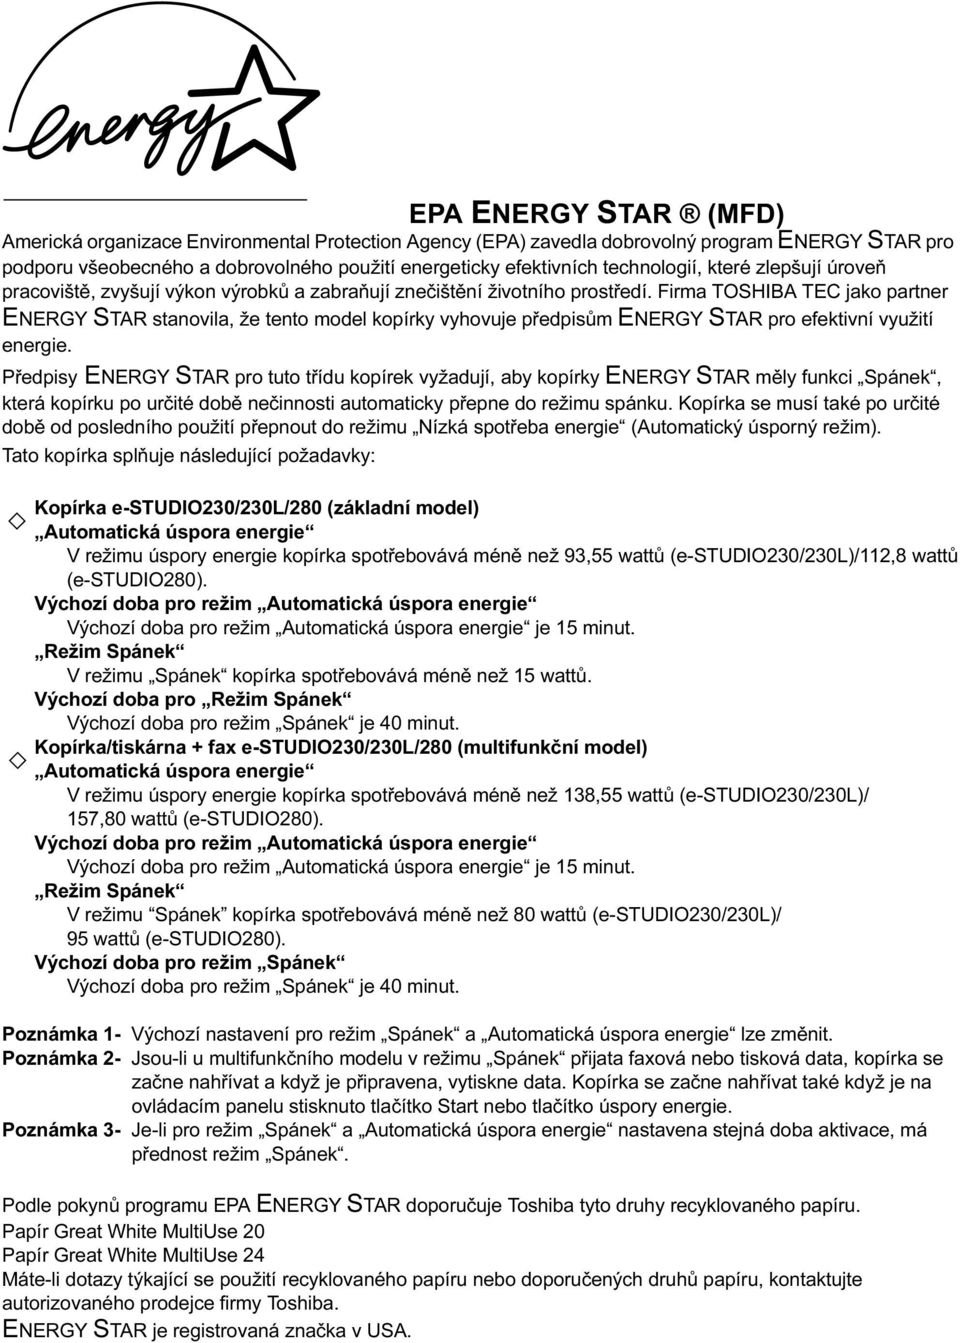 Firma TOSHIBA TEC jako partner ENERGY STAR stanovila, že tento model kopírky vyhovuje předpisům ENERGY STAR pro efektivní využití energie.